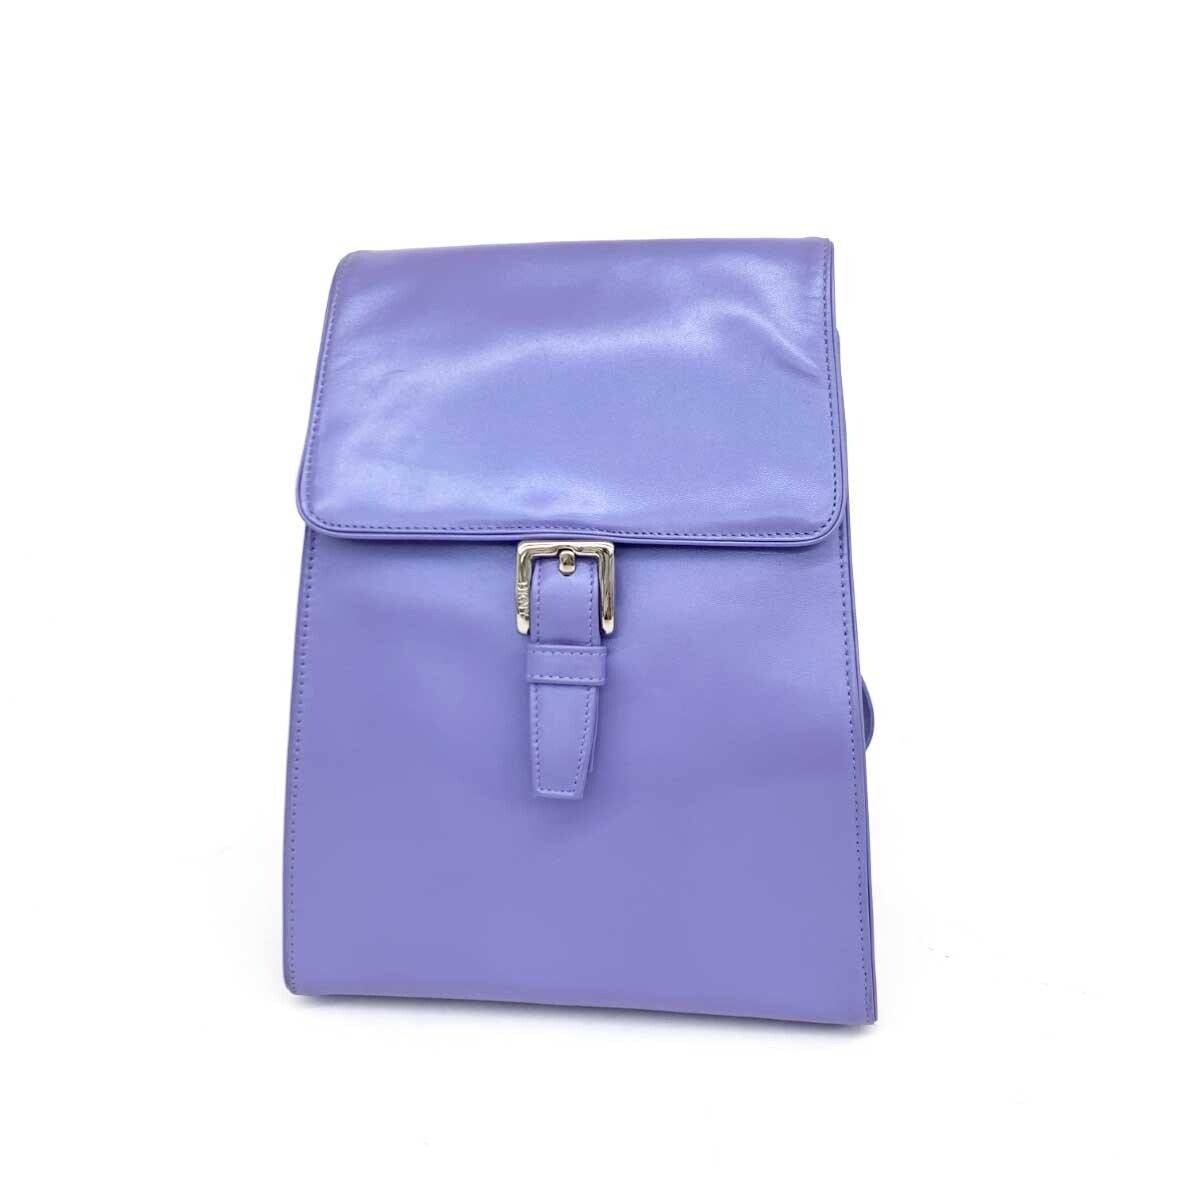  хороший *DKNY Donna Karan New York рюкзак * лиловый кожа женский рюкзак bag сумка 